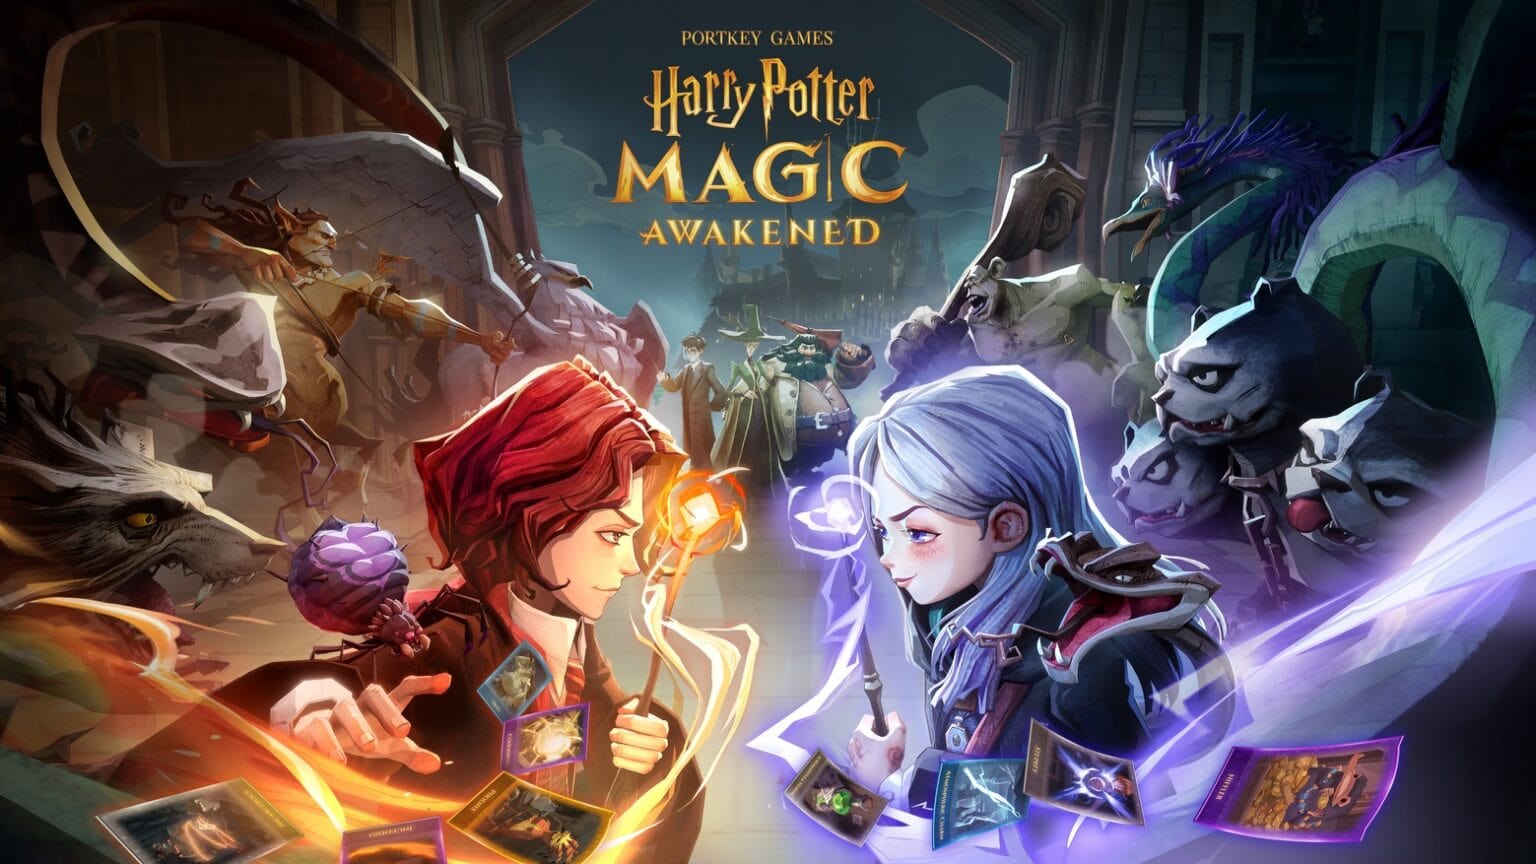 ‘Harry Potter: Magic Awakened’ game takes you back to Hogwarts